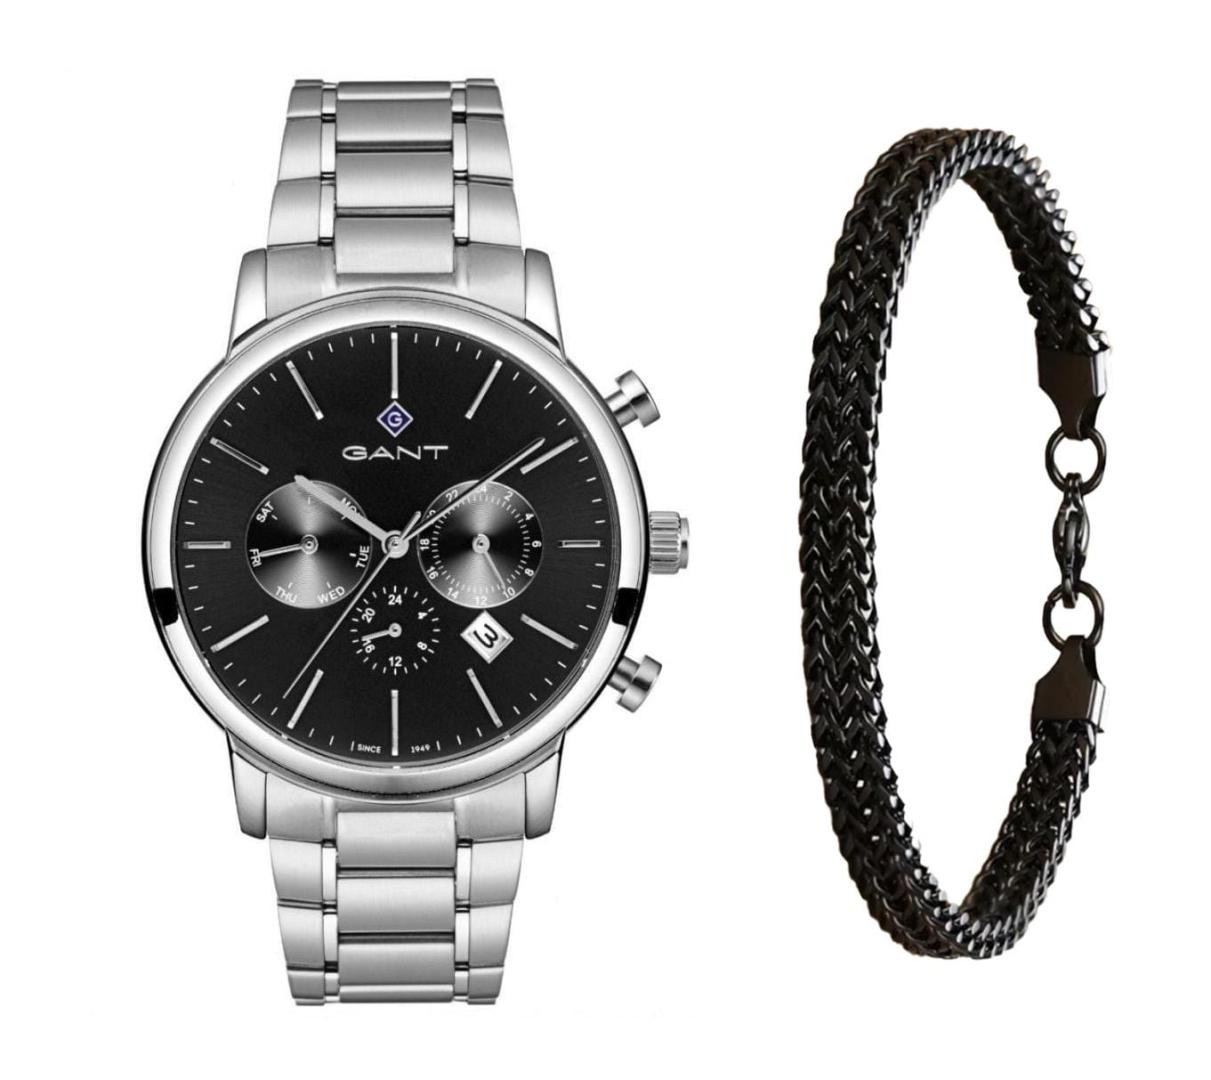 שעון יד אנלוגי לגבר gant g132001 גאנט עם צמיד חוליות שחור